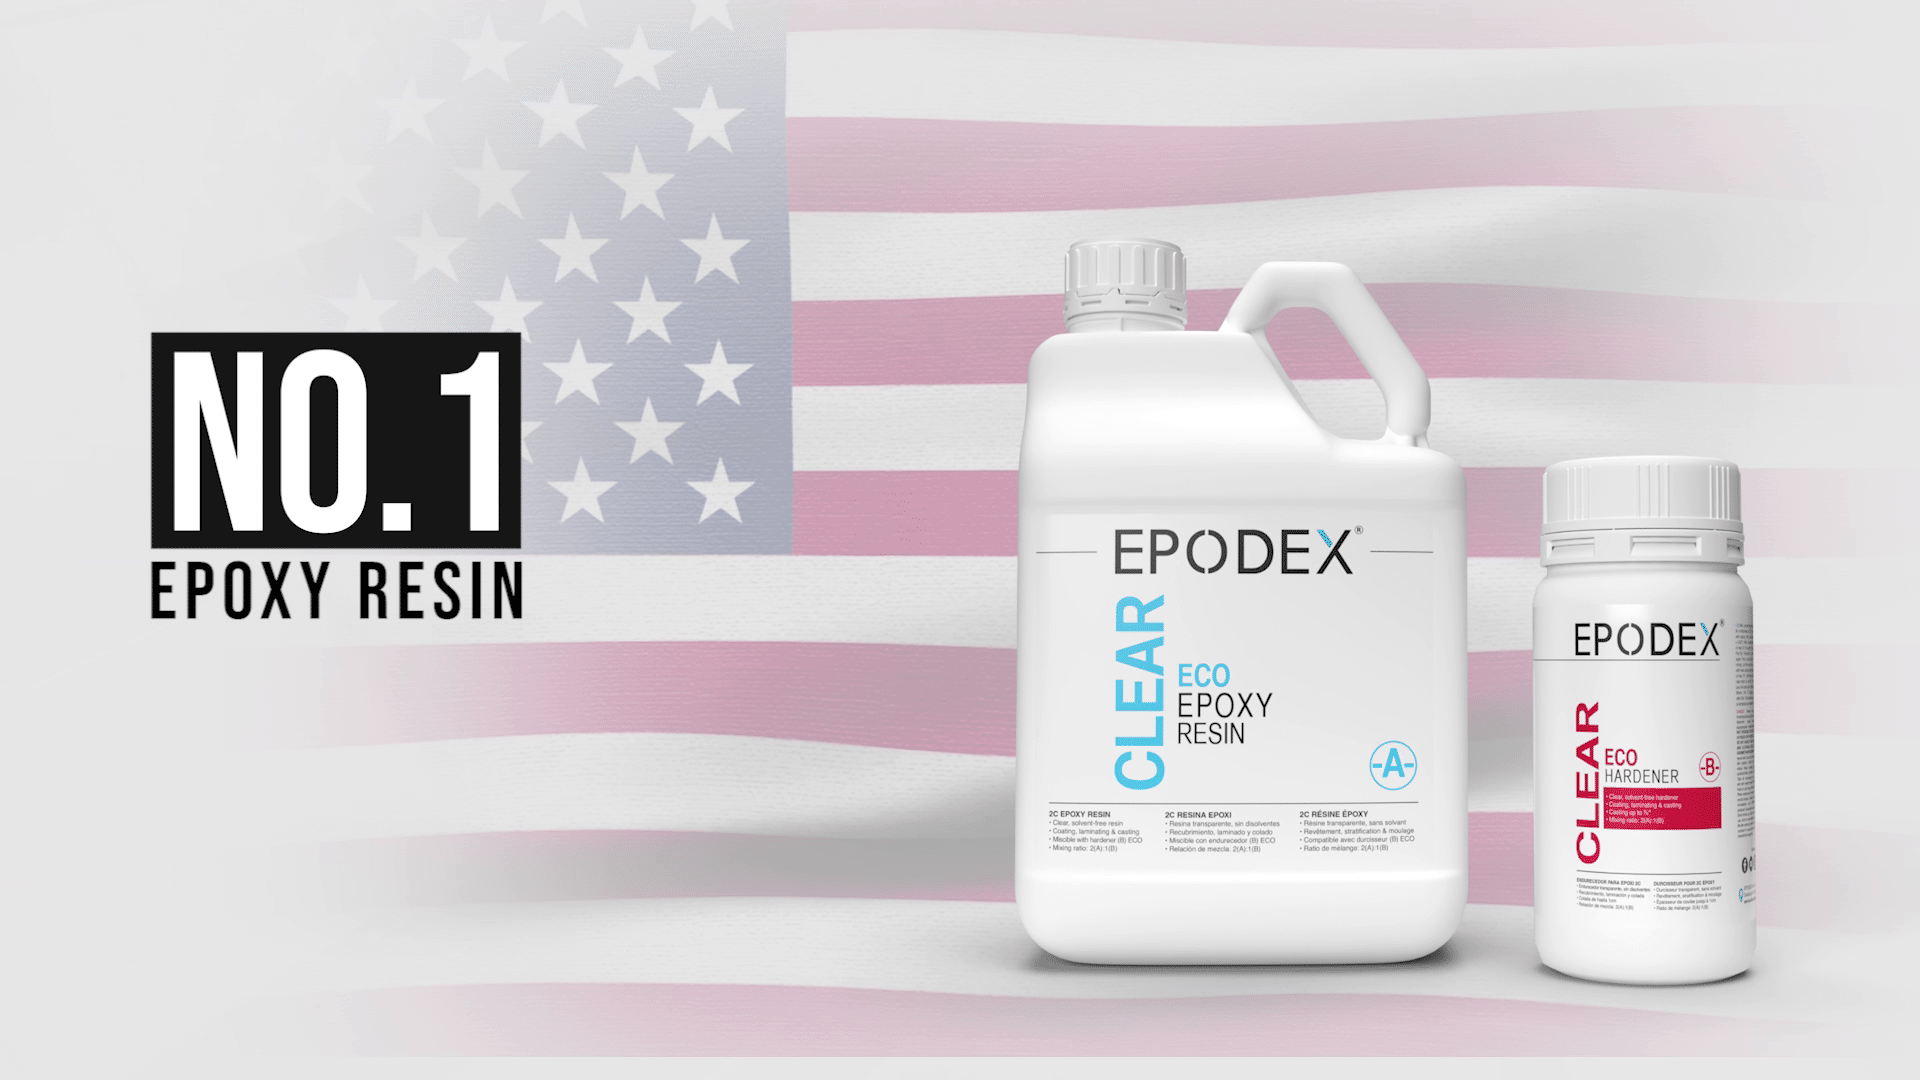 Coating & Sealing Epoxy Resin Kit - EPODEX - USA